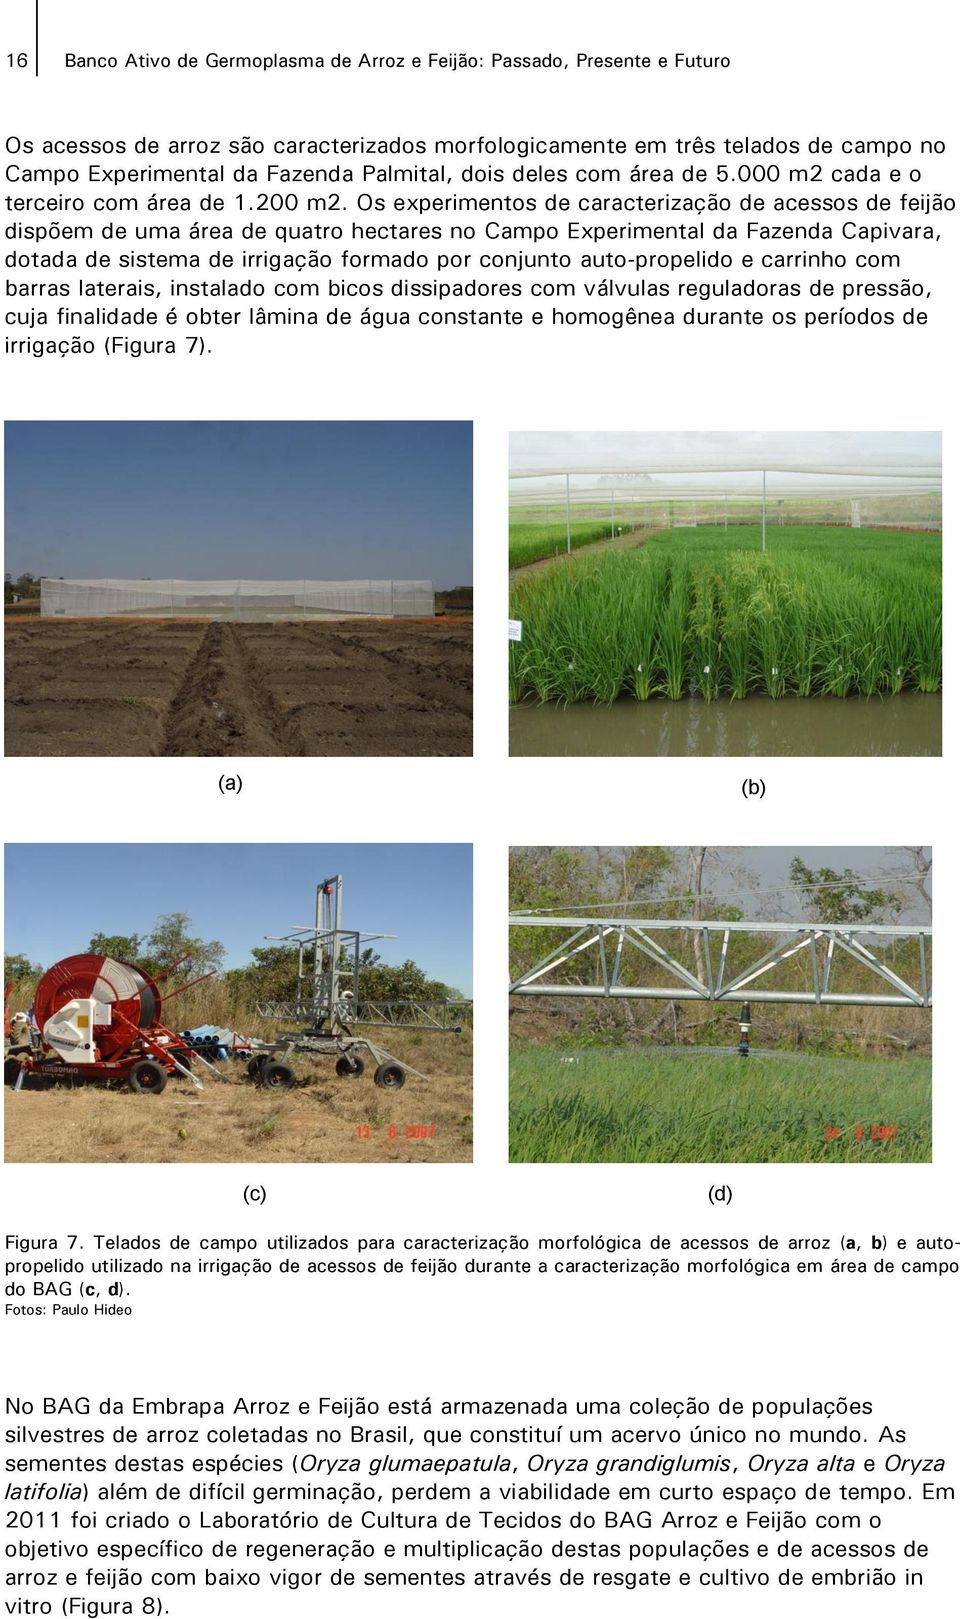 Os experimentos de caracterização de acessos de feijão dispõem de uma área de quatro hectares no Campo Experimental da Fazenda Capivara, dotada de sistema de irrigação formado por conjunto